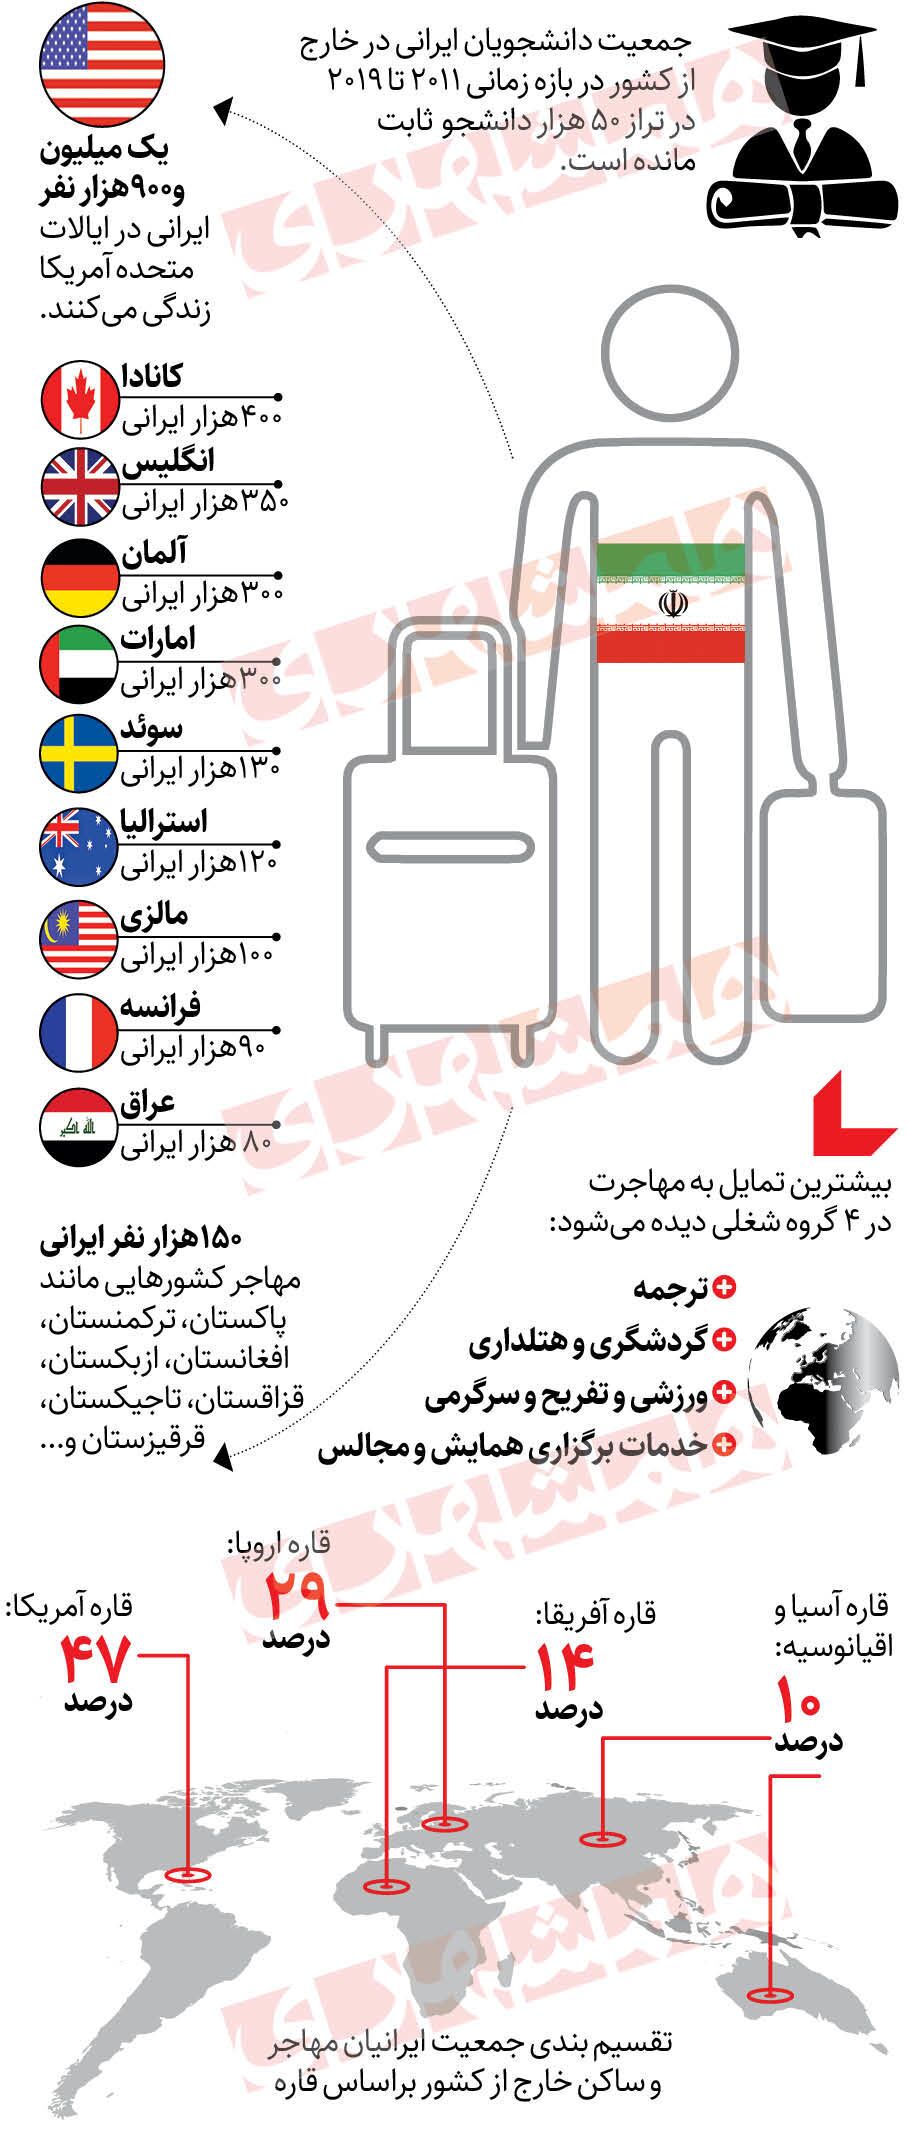  بیشترین مقصد مهاجرت ایرانیان کجاست؟